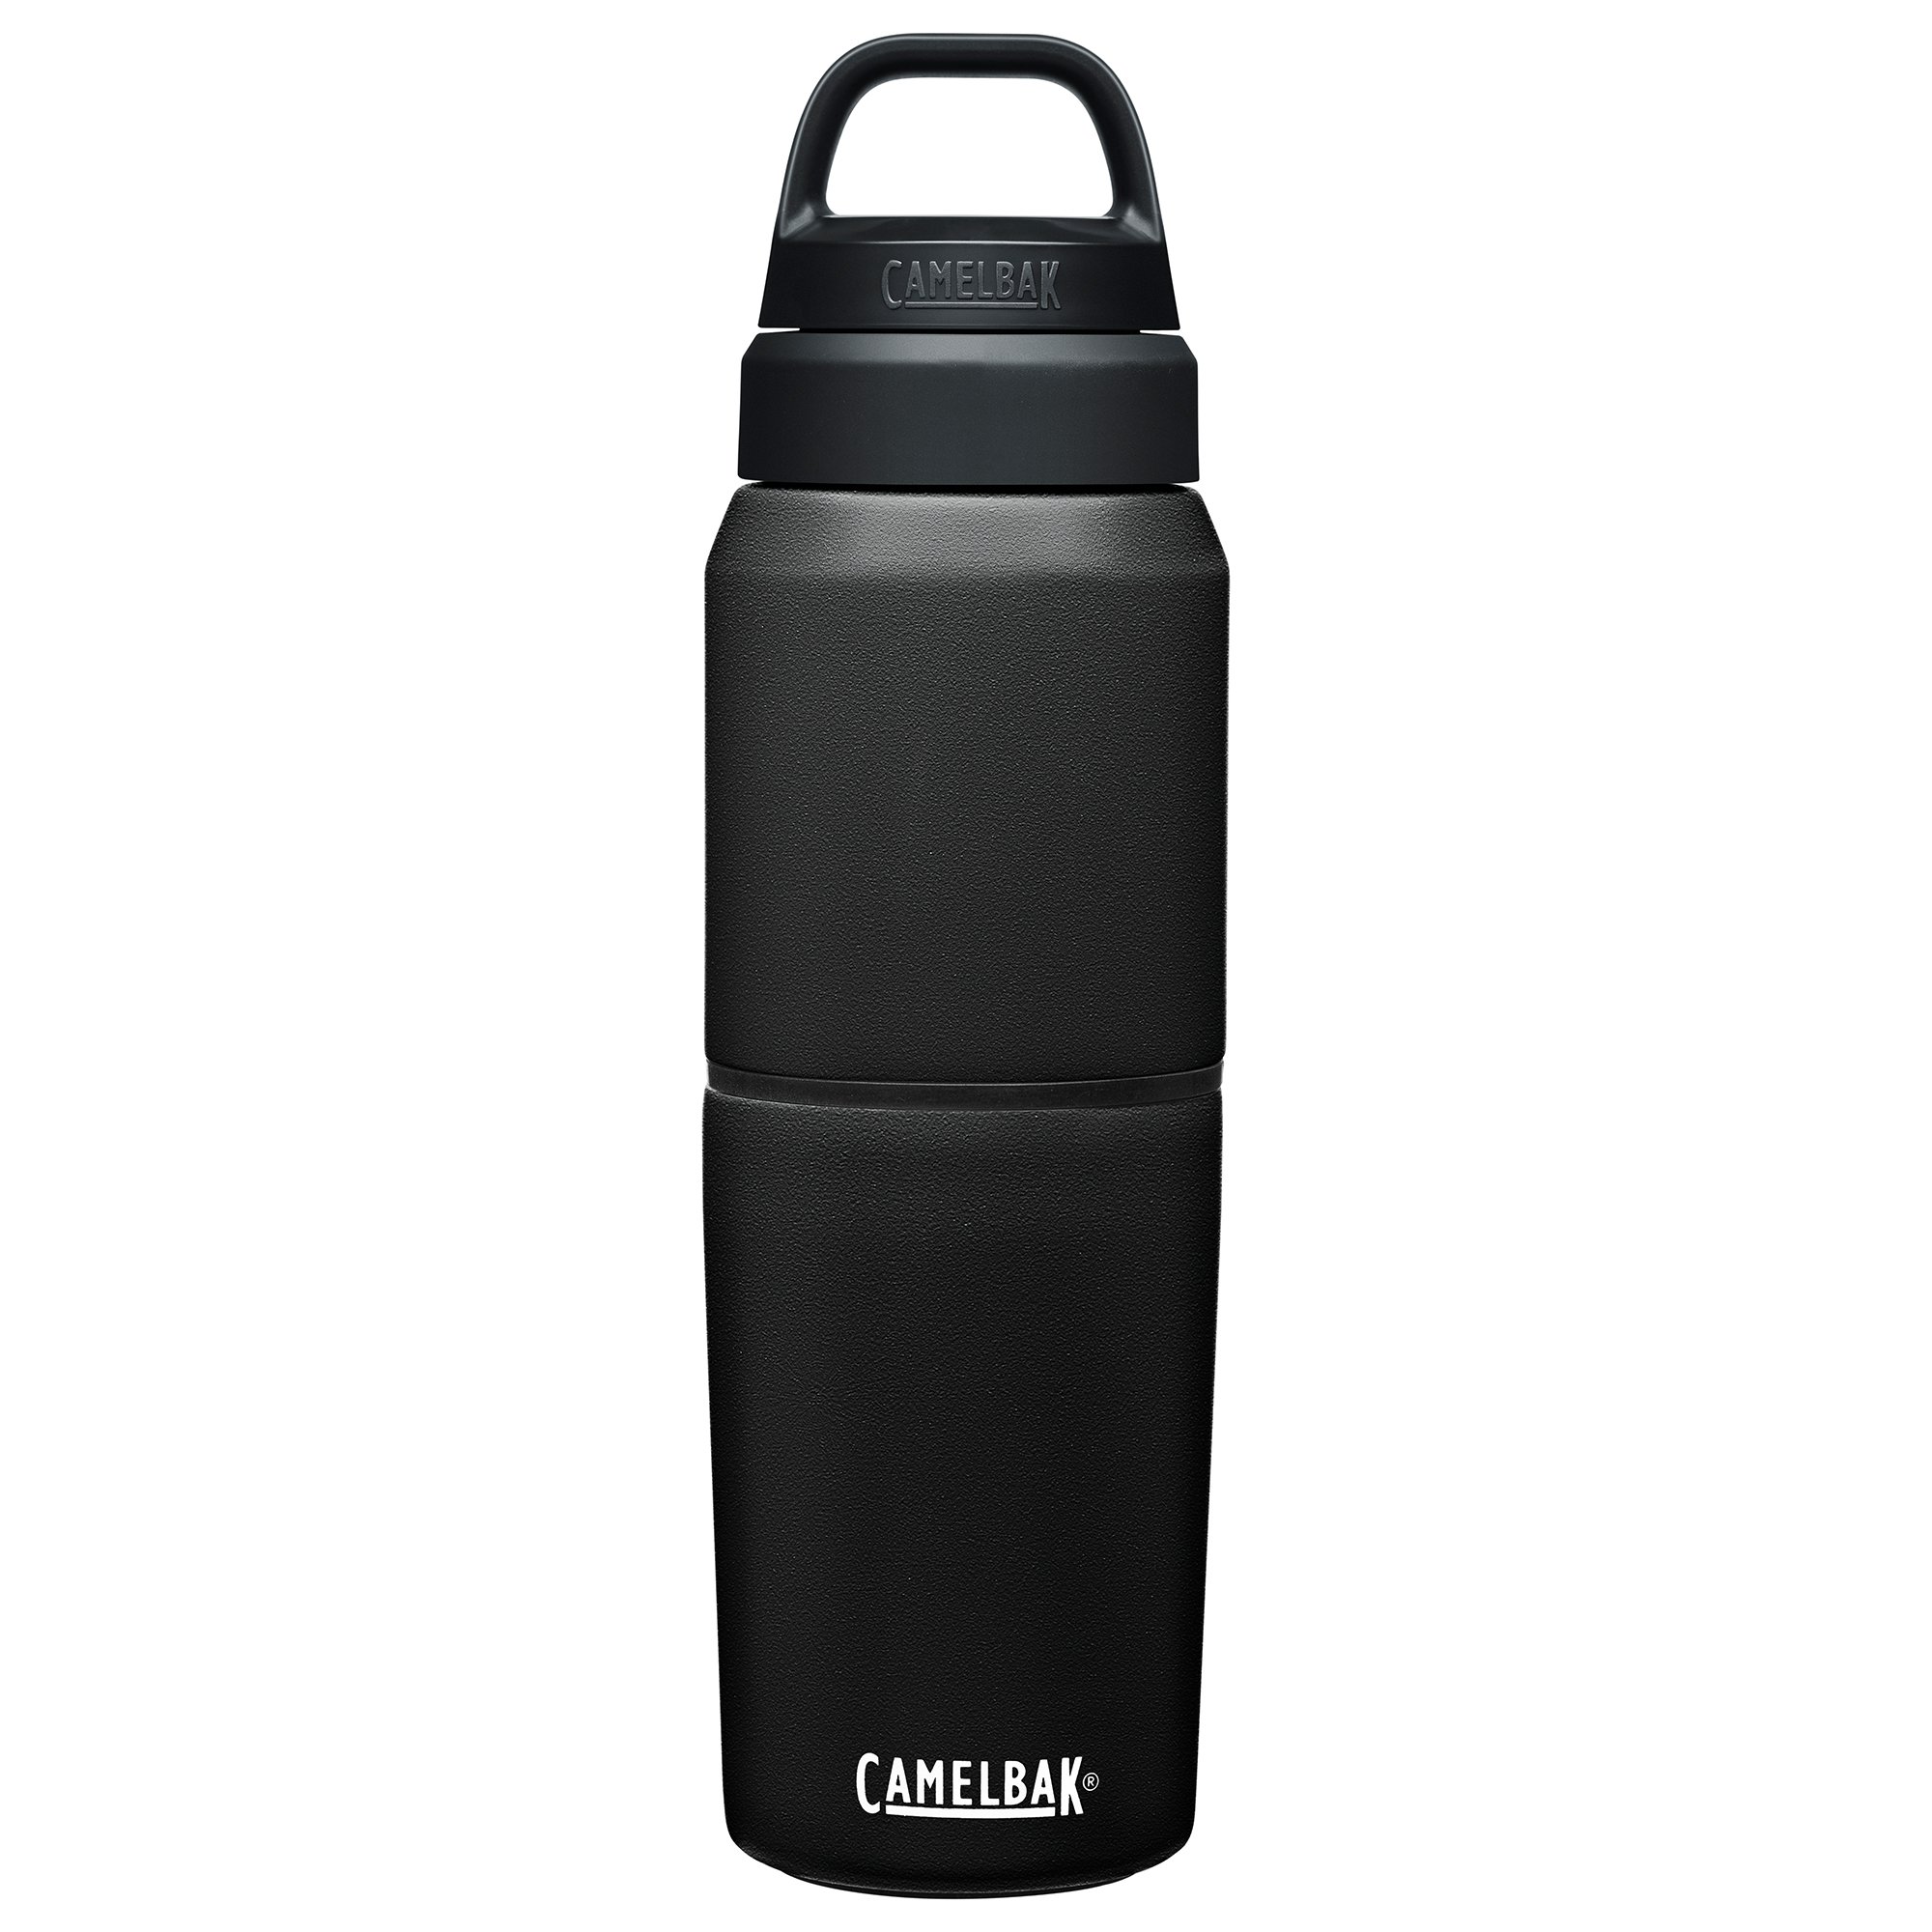 Camelbak MultiBev 0.5/0.35 liter, black